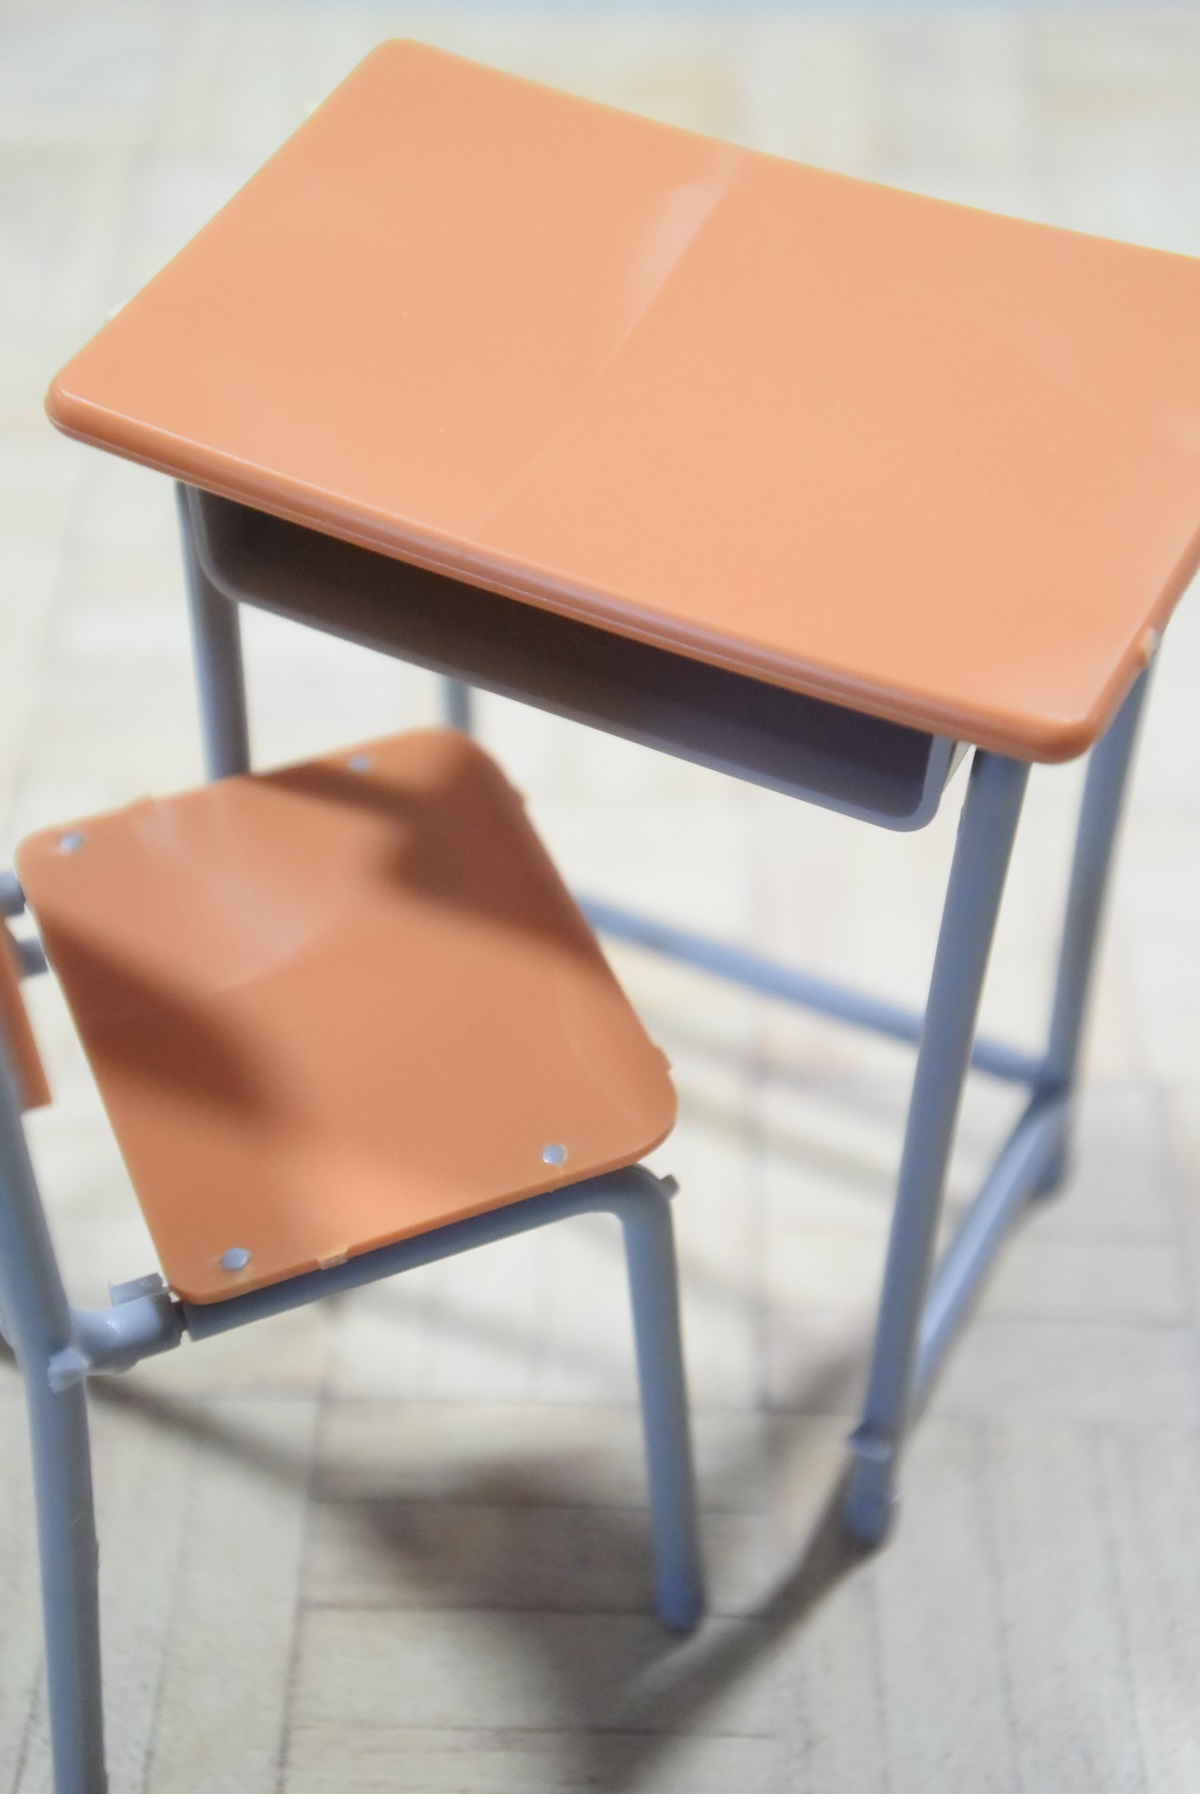 学校の机と椅子1 12 可動フィギュア用アクセサリーのレビュー